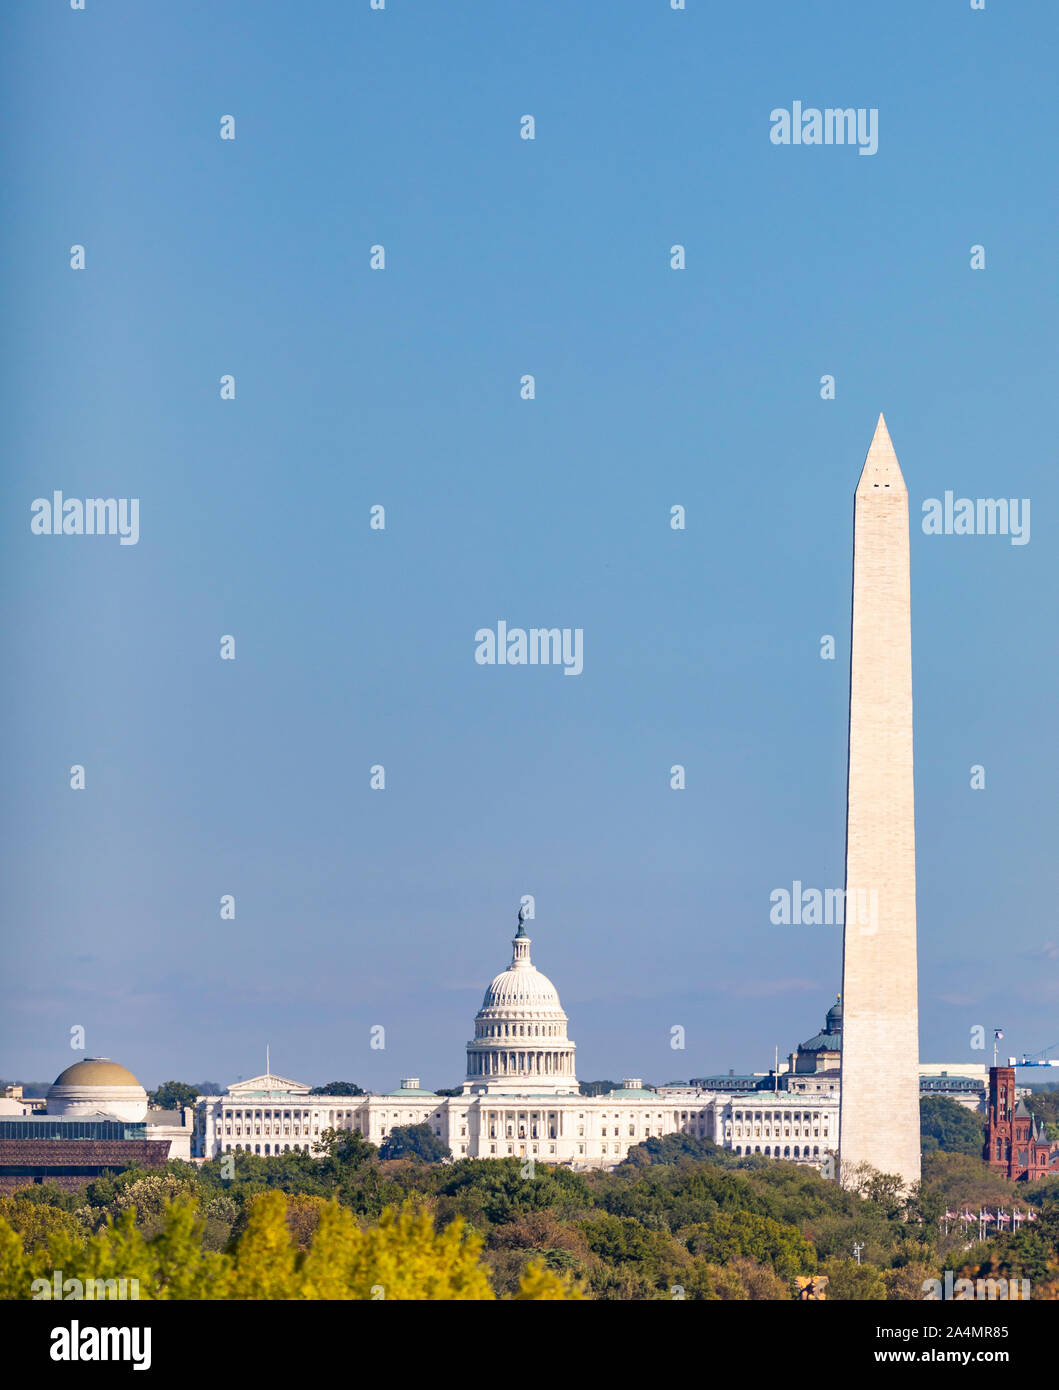 WASHINGTON, DC, EE.UU. - El edificio del Capitolio de EE.UU., a la izquierda, y el Monumento a Washington. Foto de stock